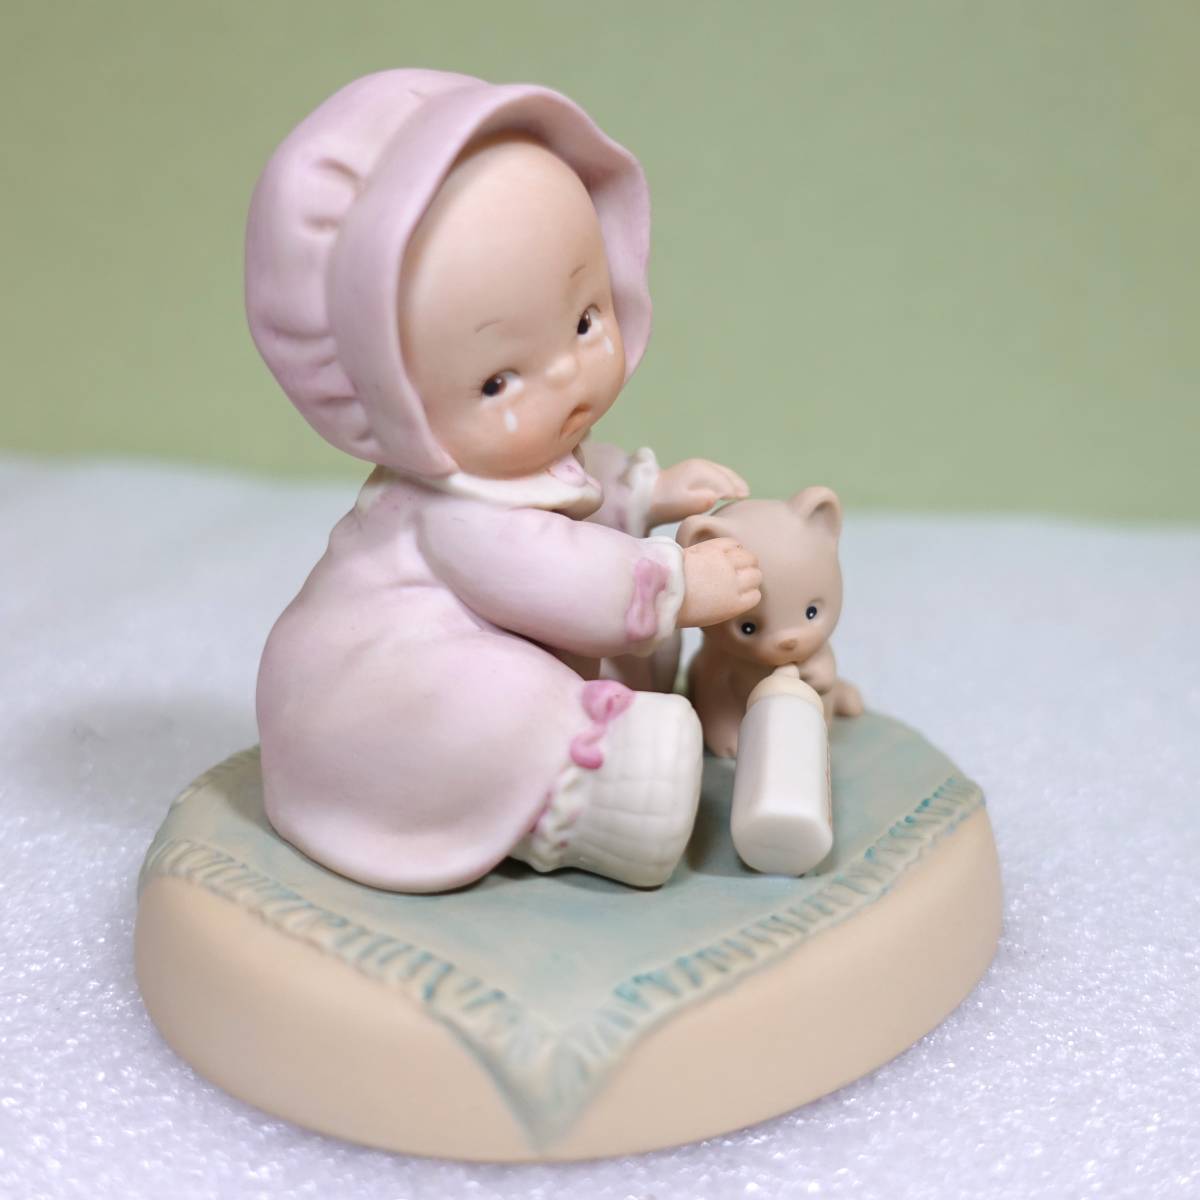 ◆エネスコ社 ◆Enescoマーベル ルーシー アトウェル 陶器人形 ◆メモリーズオブイエスタディ#523232 アトウェル人形◆置物◆赤ちゃんの画像3